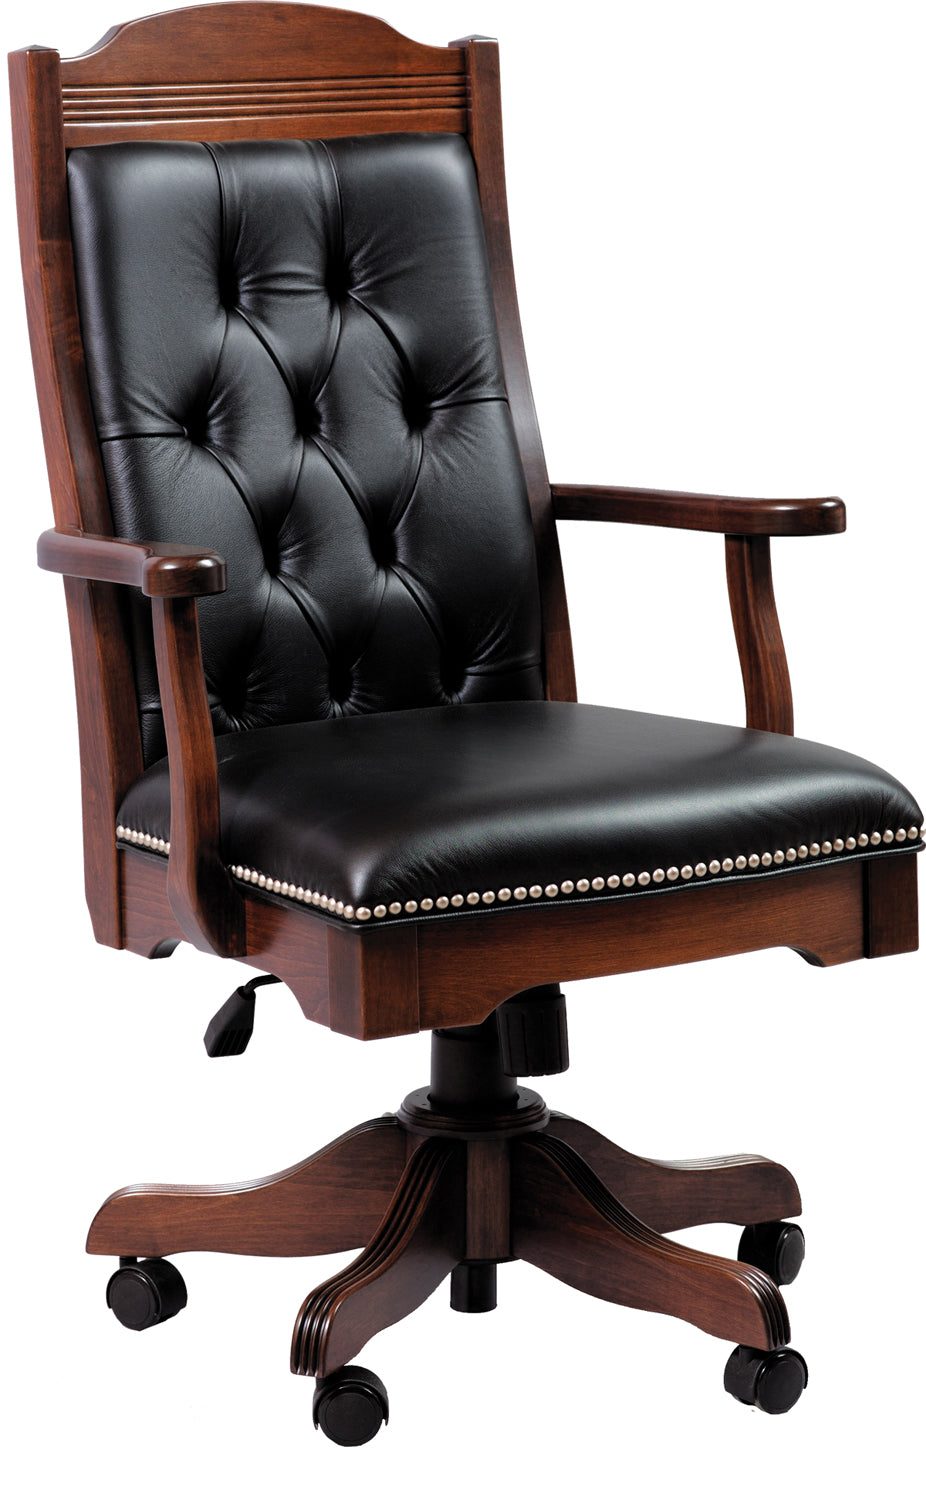 Starr Executive Arm Desk Chair